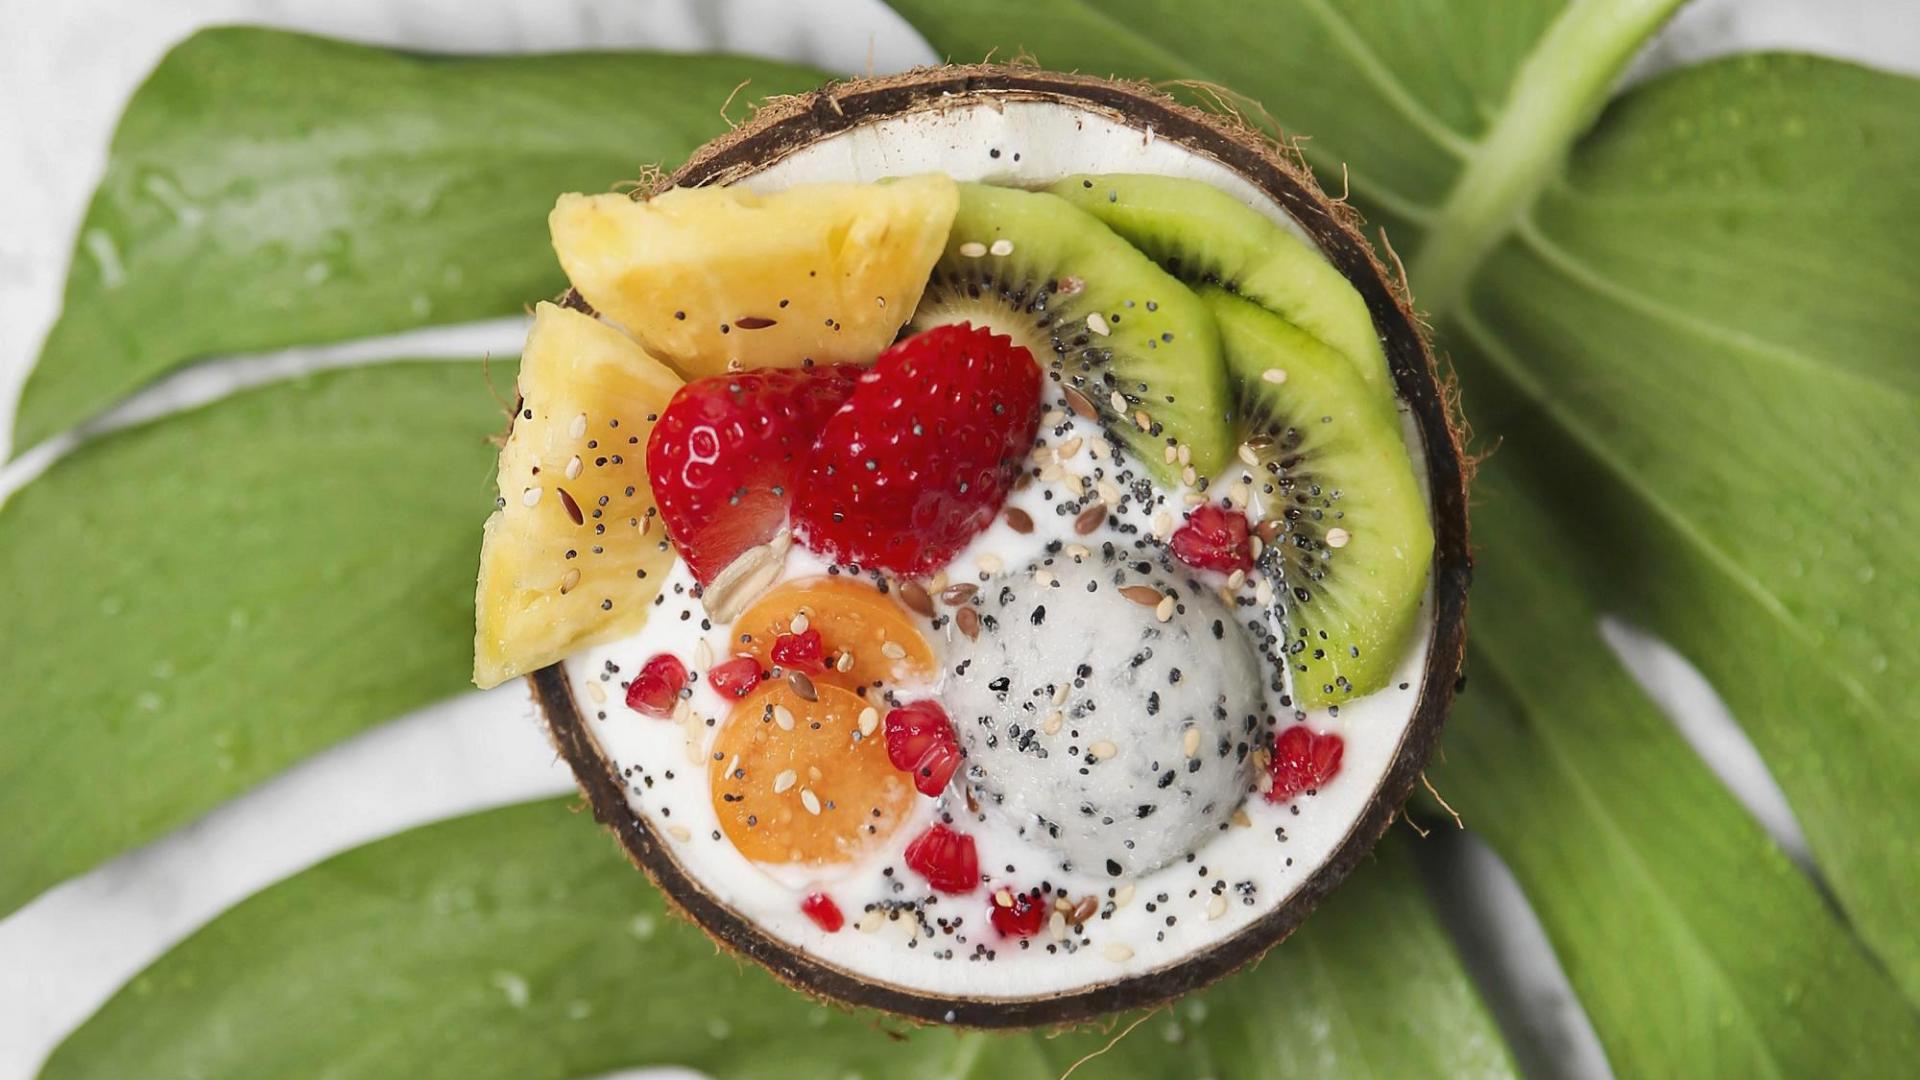 Kokosnuss gefüllt mit Früchten